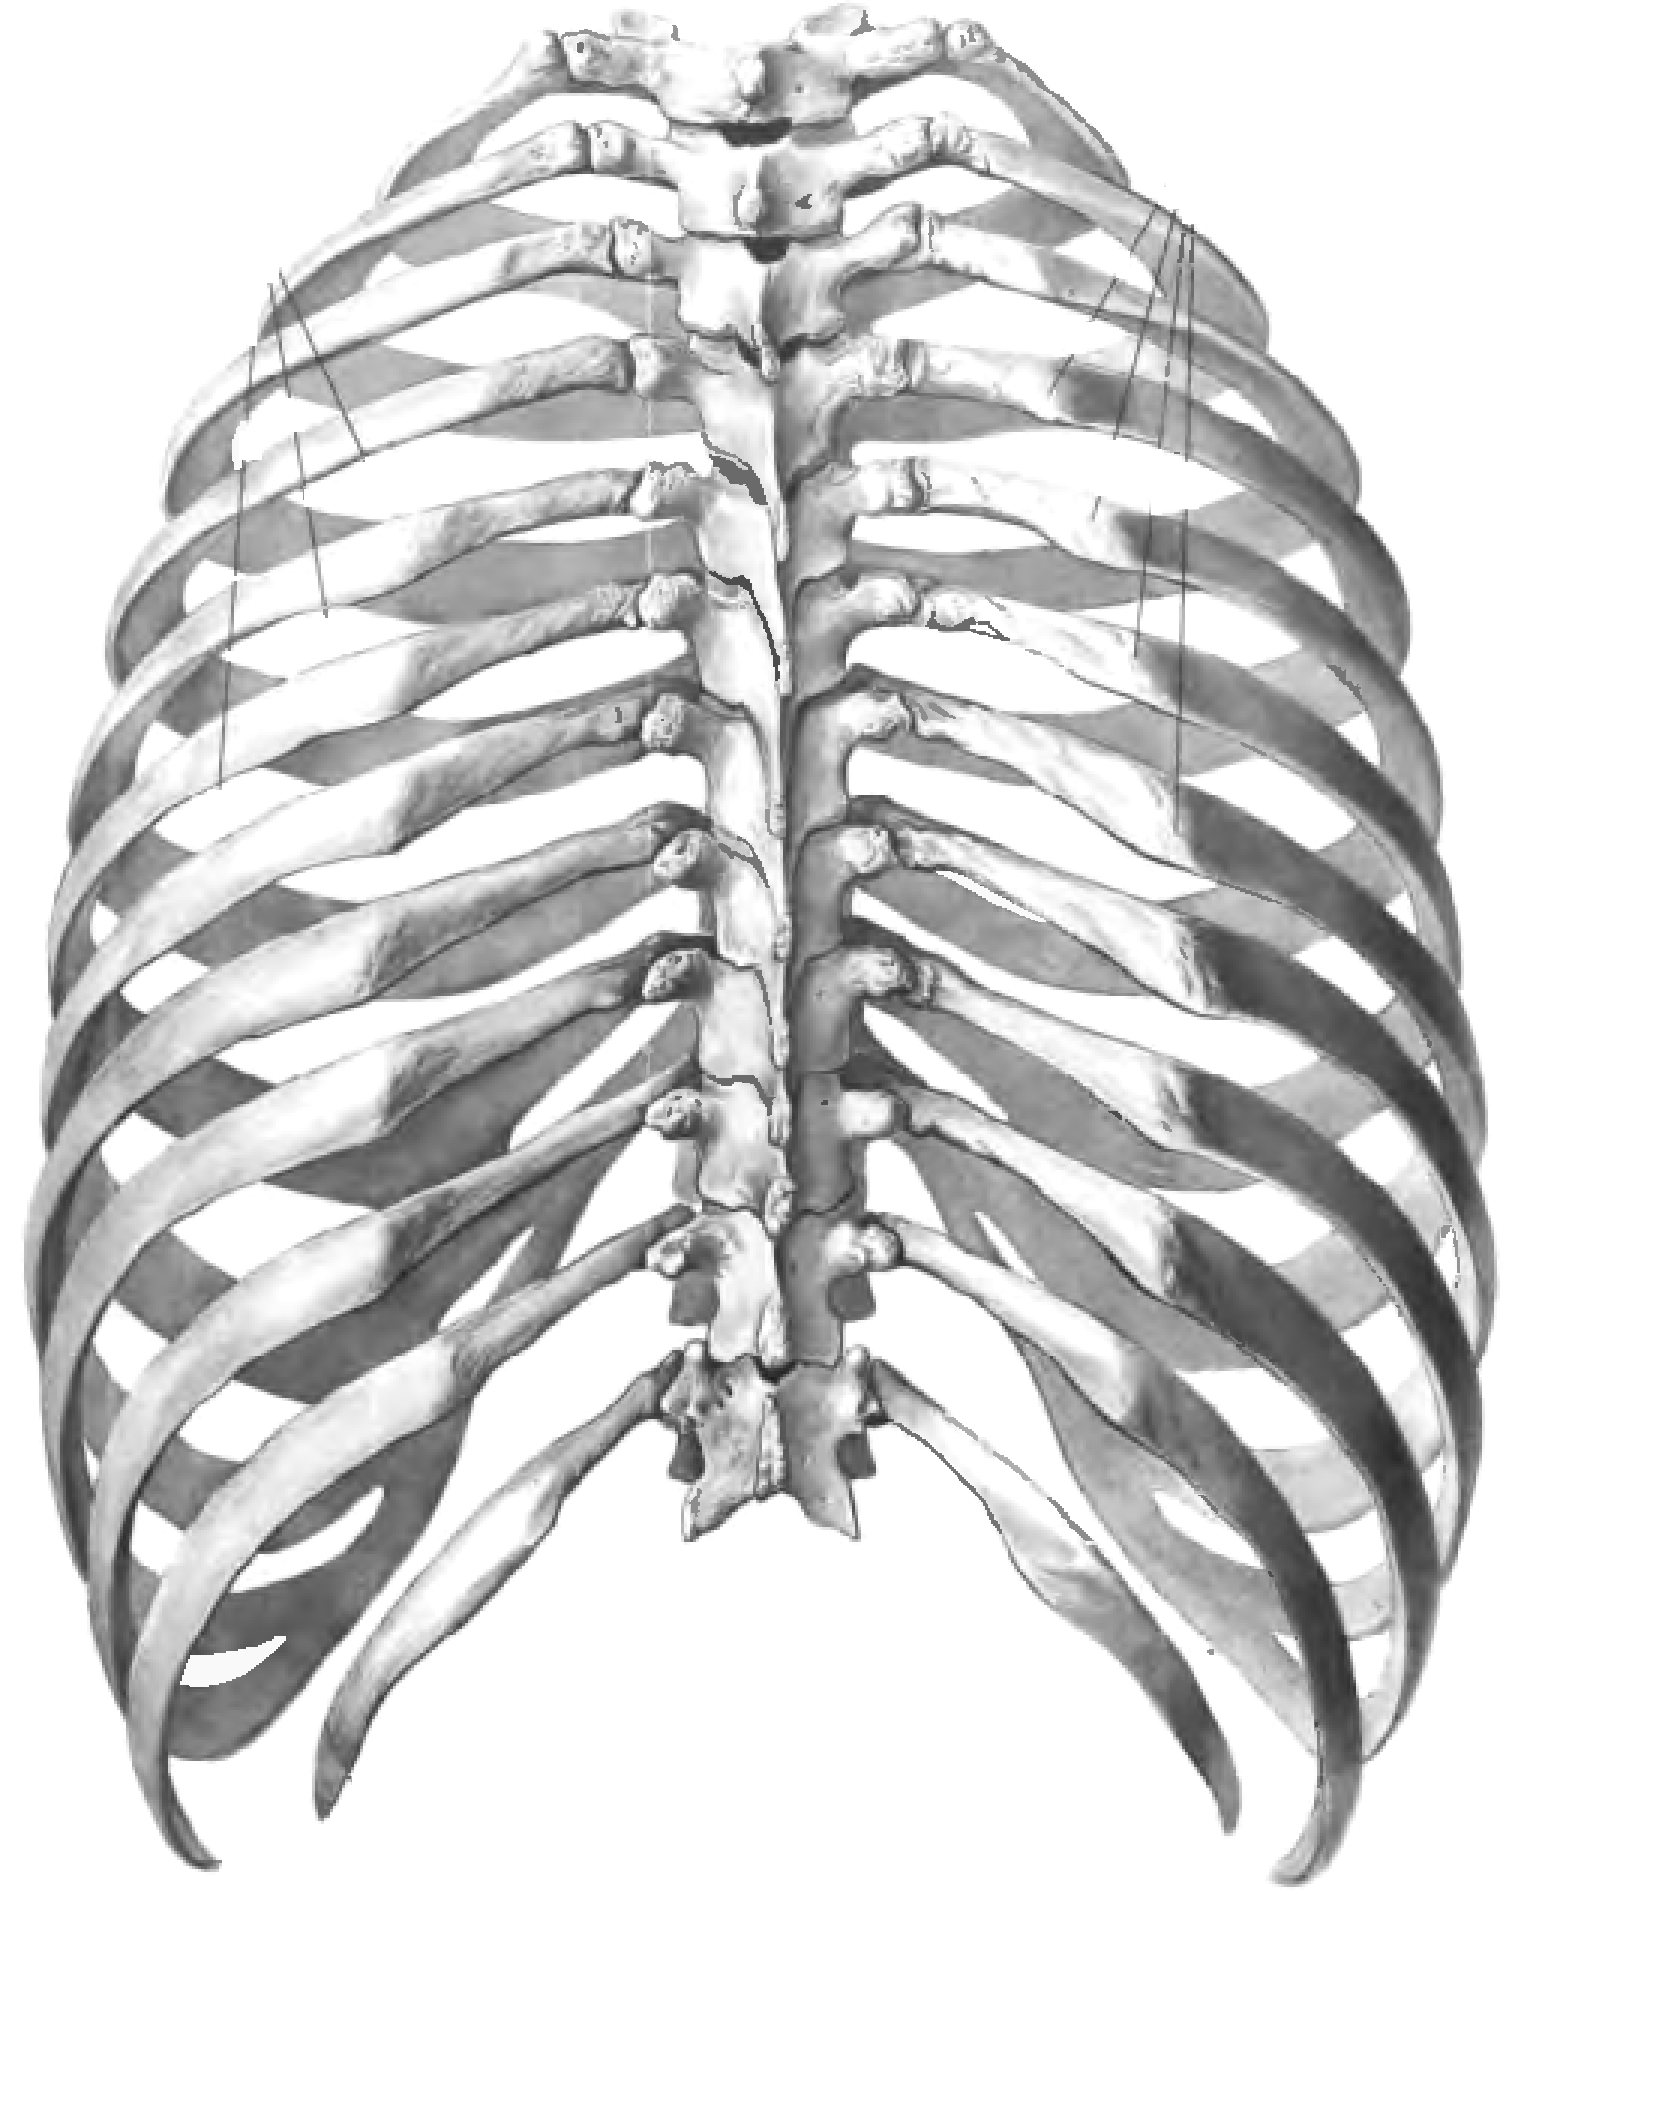 Округлая грудная клетка. Анатомия скелет грудной клетки ребра Грудина. Грудная клетка анатомия человека вид спереди. Грудная клетка с ребрами и грудиной.